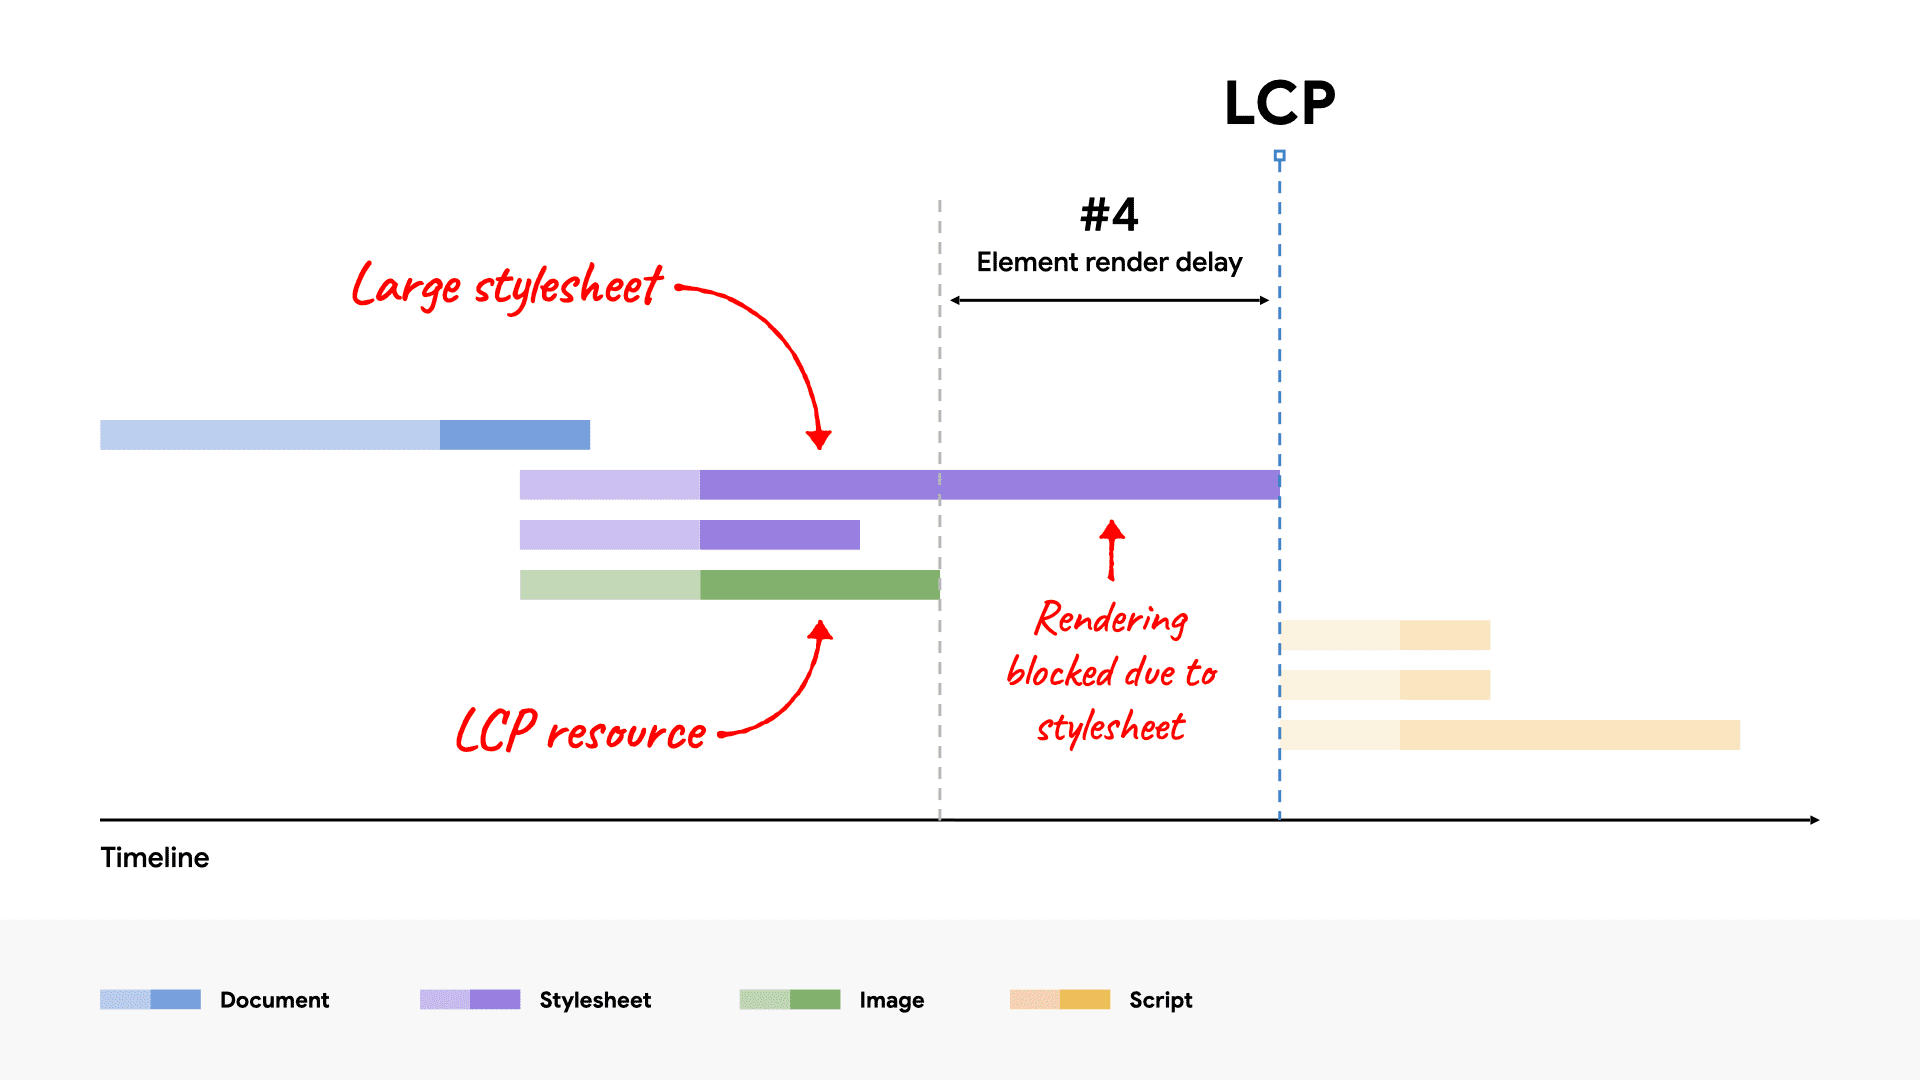 یک نمودار آبشار شبکه که یک فایل CSS بزرگ را نشان می دهد که رندر عنصر LCP را مسدود می کند زیرا بارگذاری آن نسبت به منبع LCP بیشتر طول می کشد.